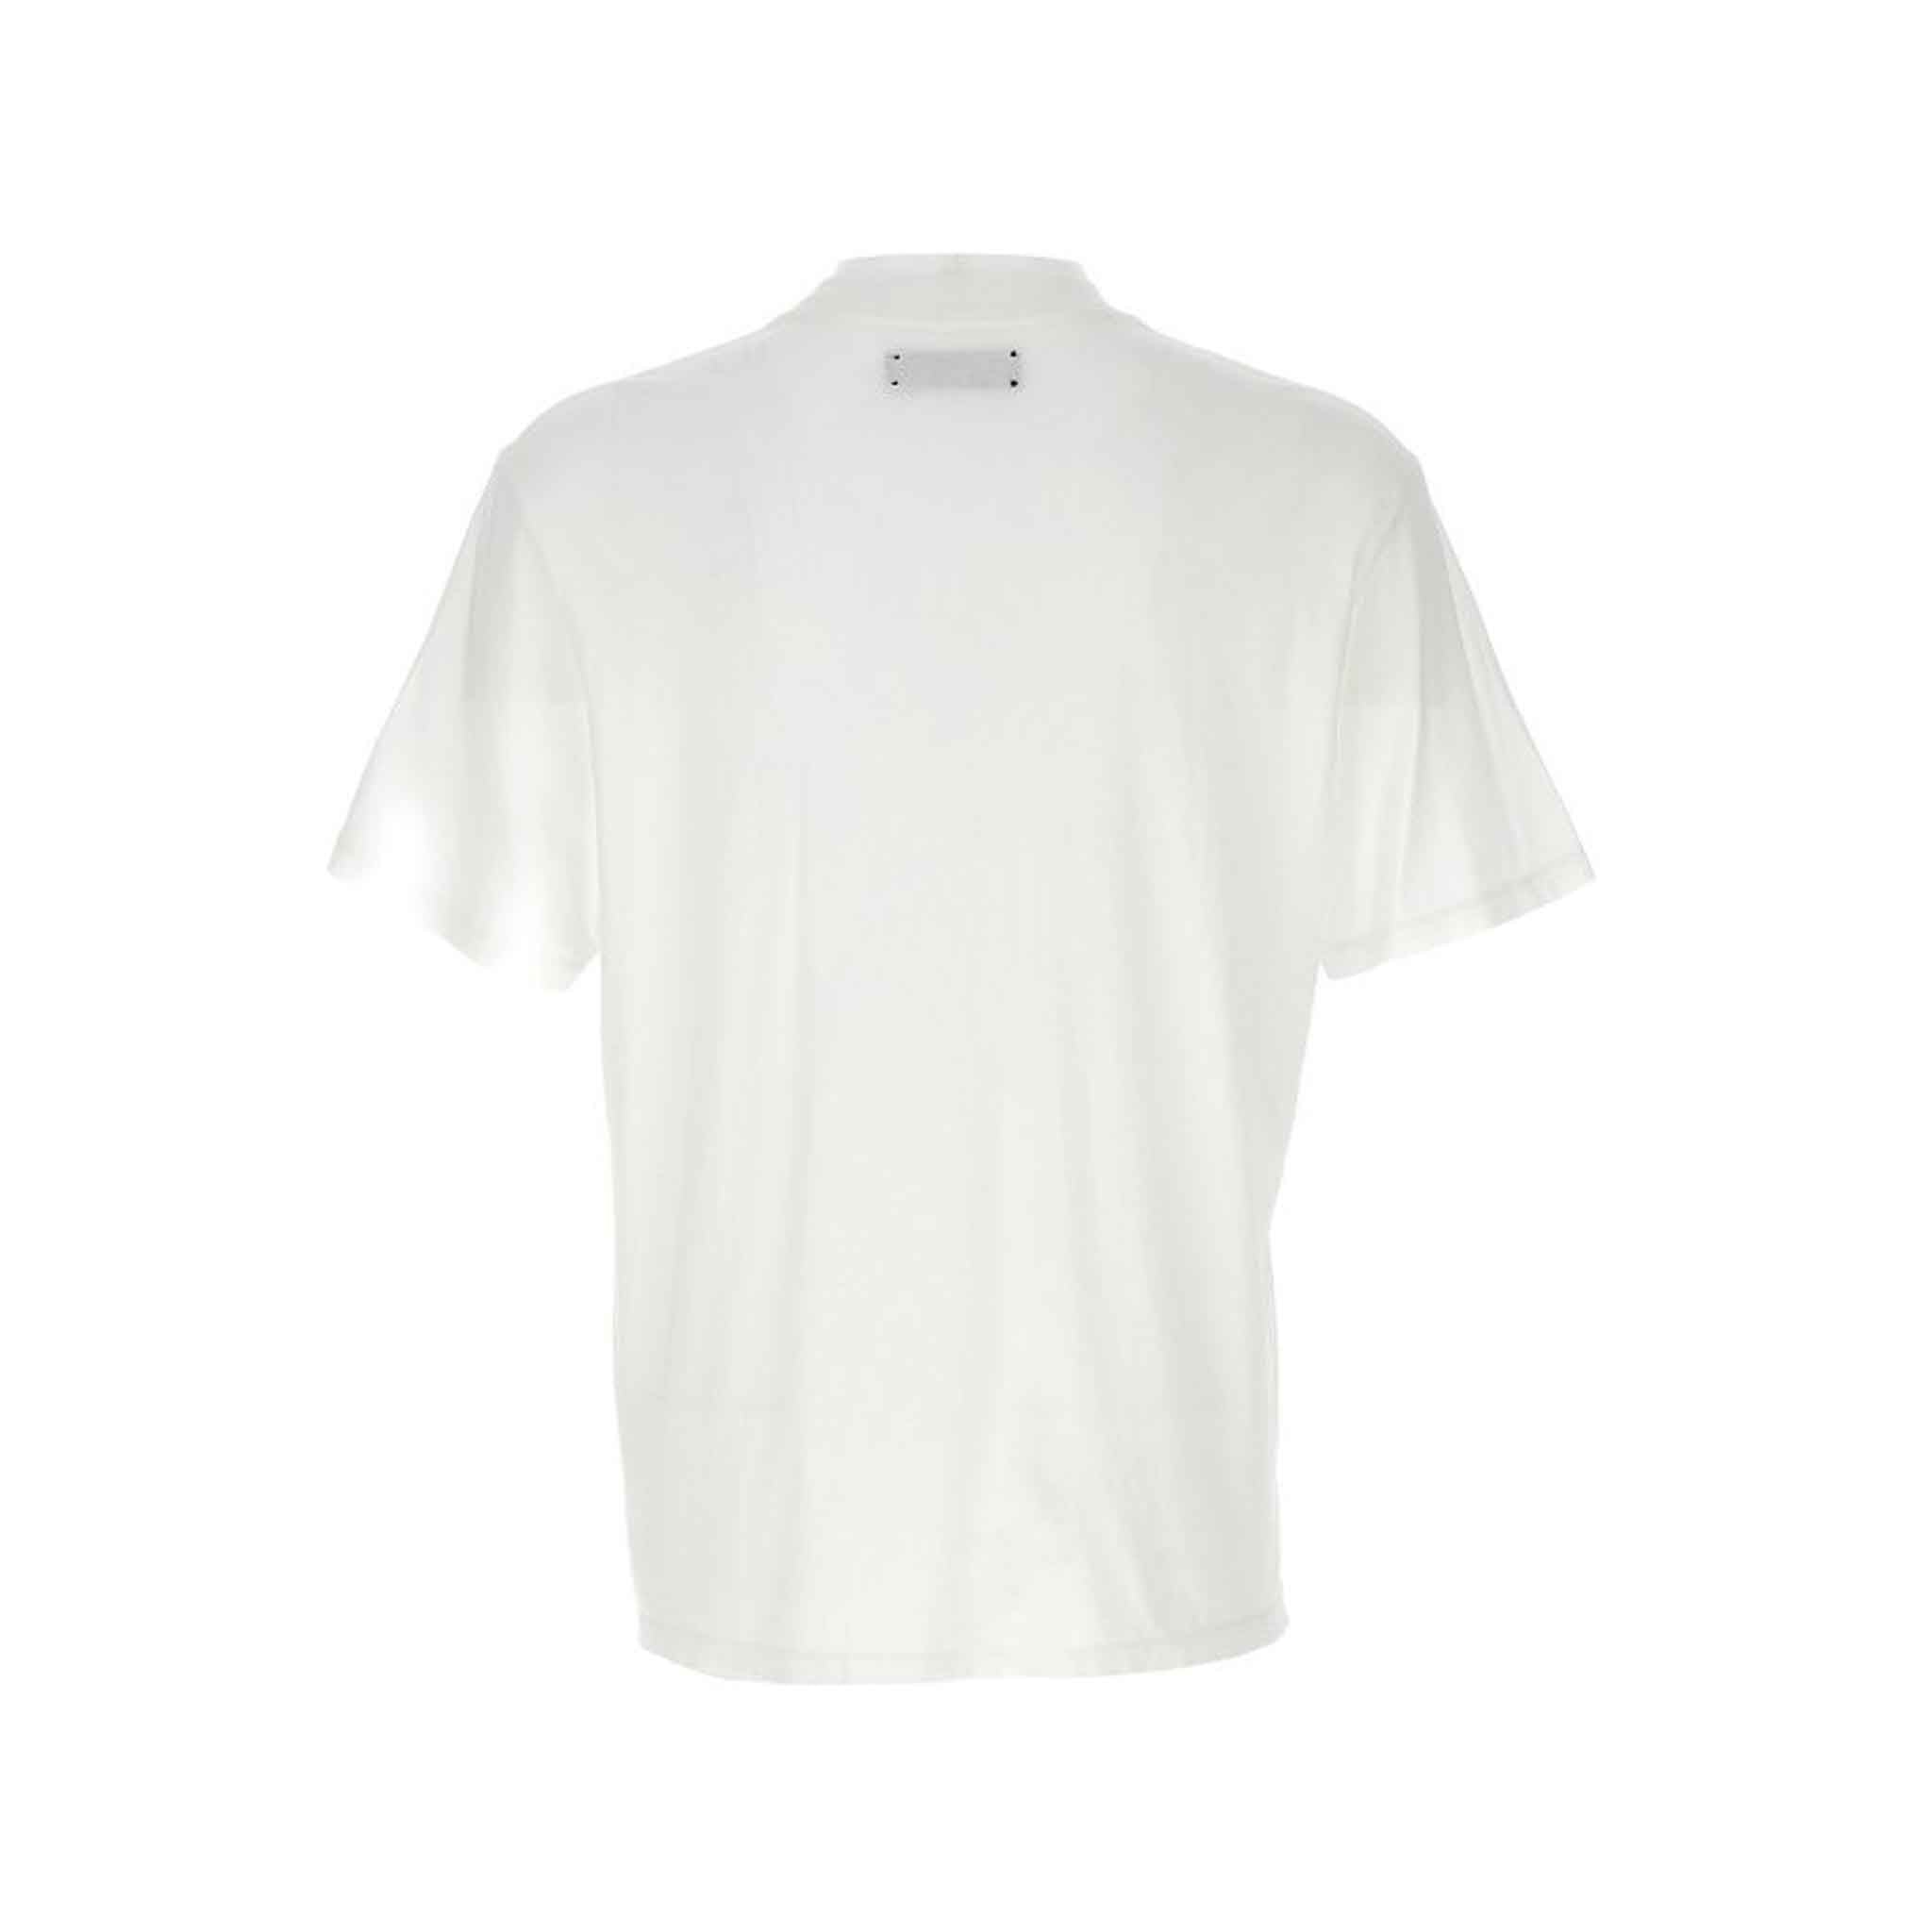 Amiri MA Bar Applique T-Shirt in White